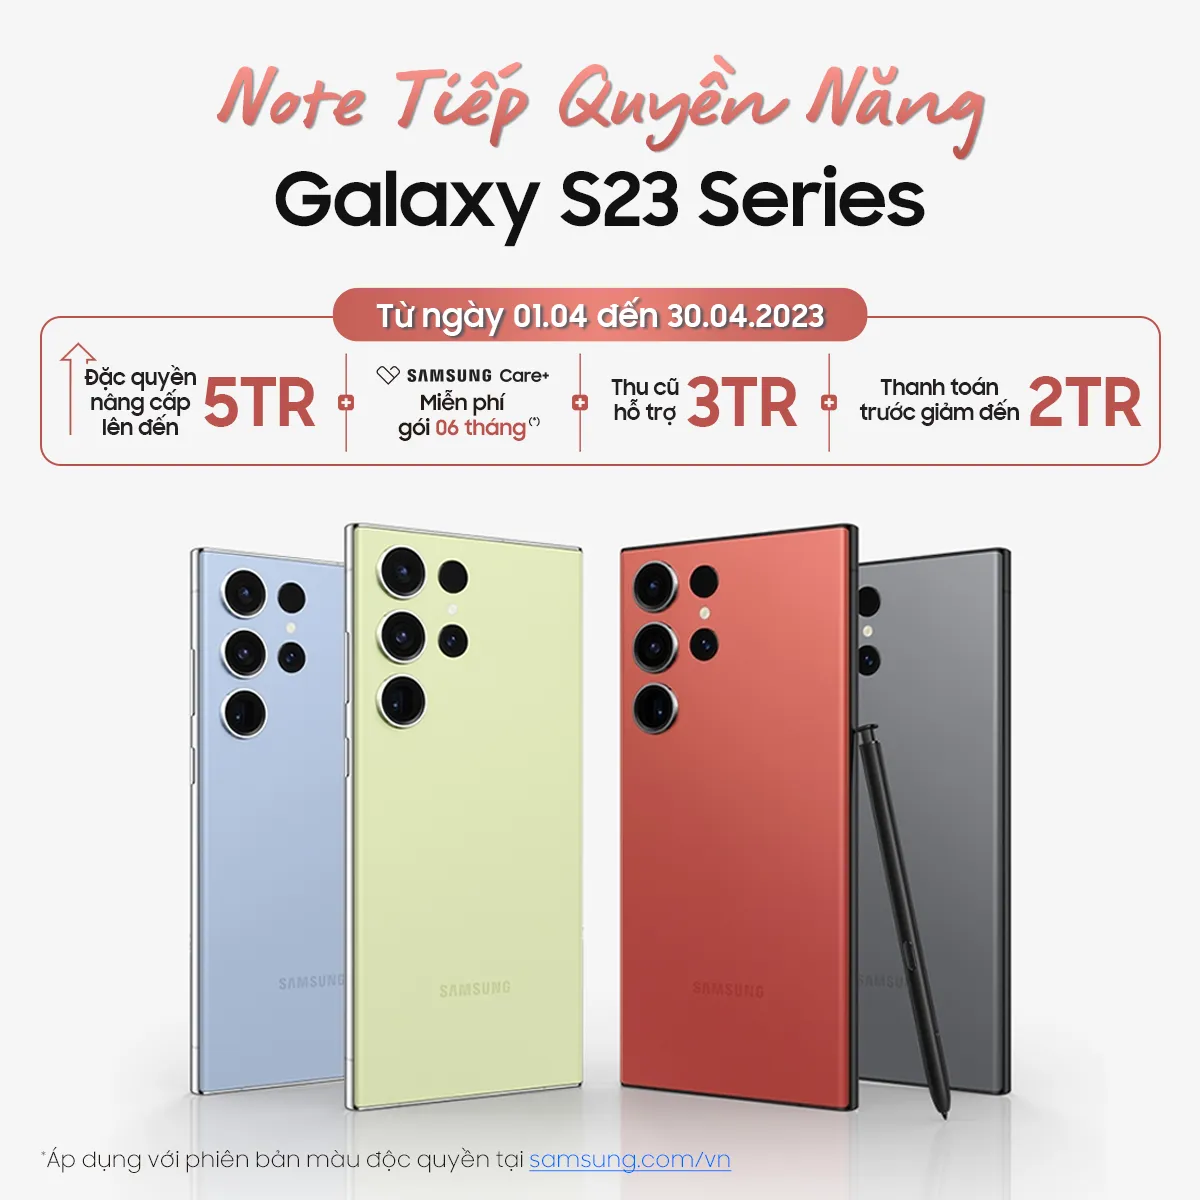 Lên đời ngay Galaxy S23 Ultra màu độc quyền với giá ưu đãi để bắt trọn chất đêm